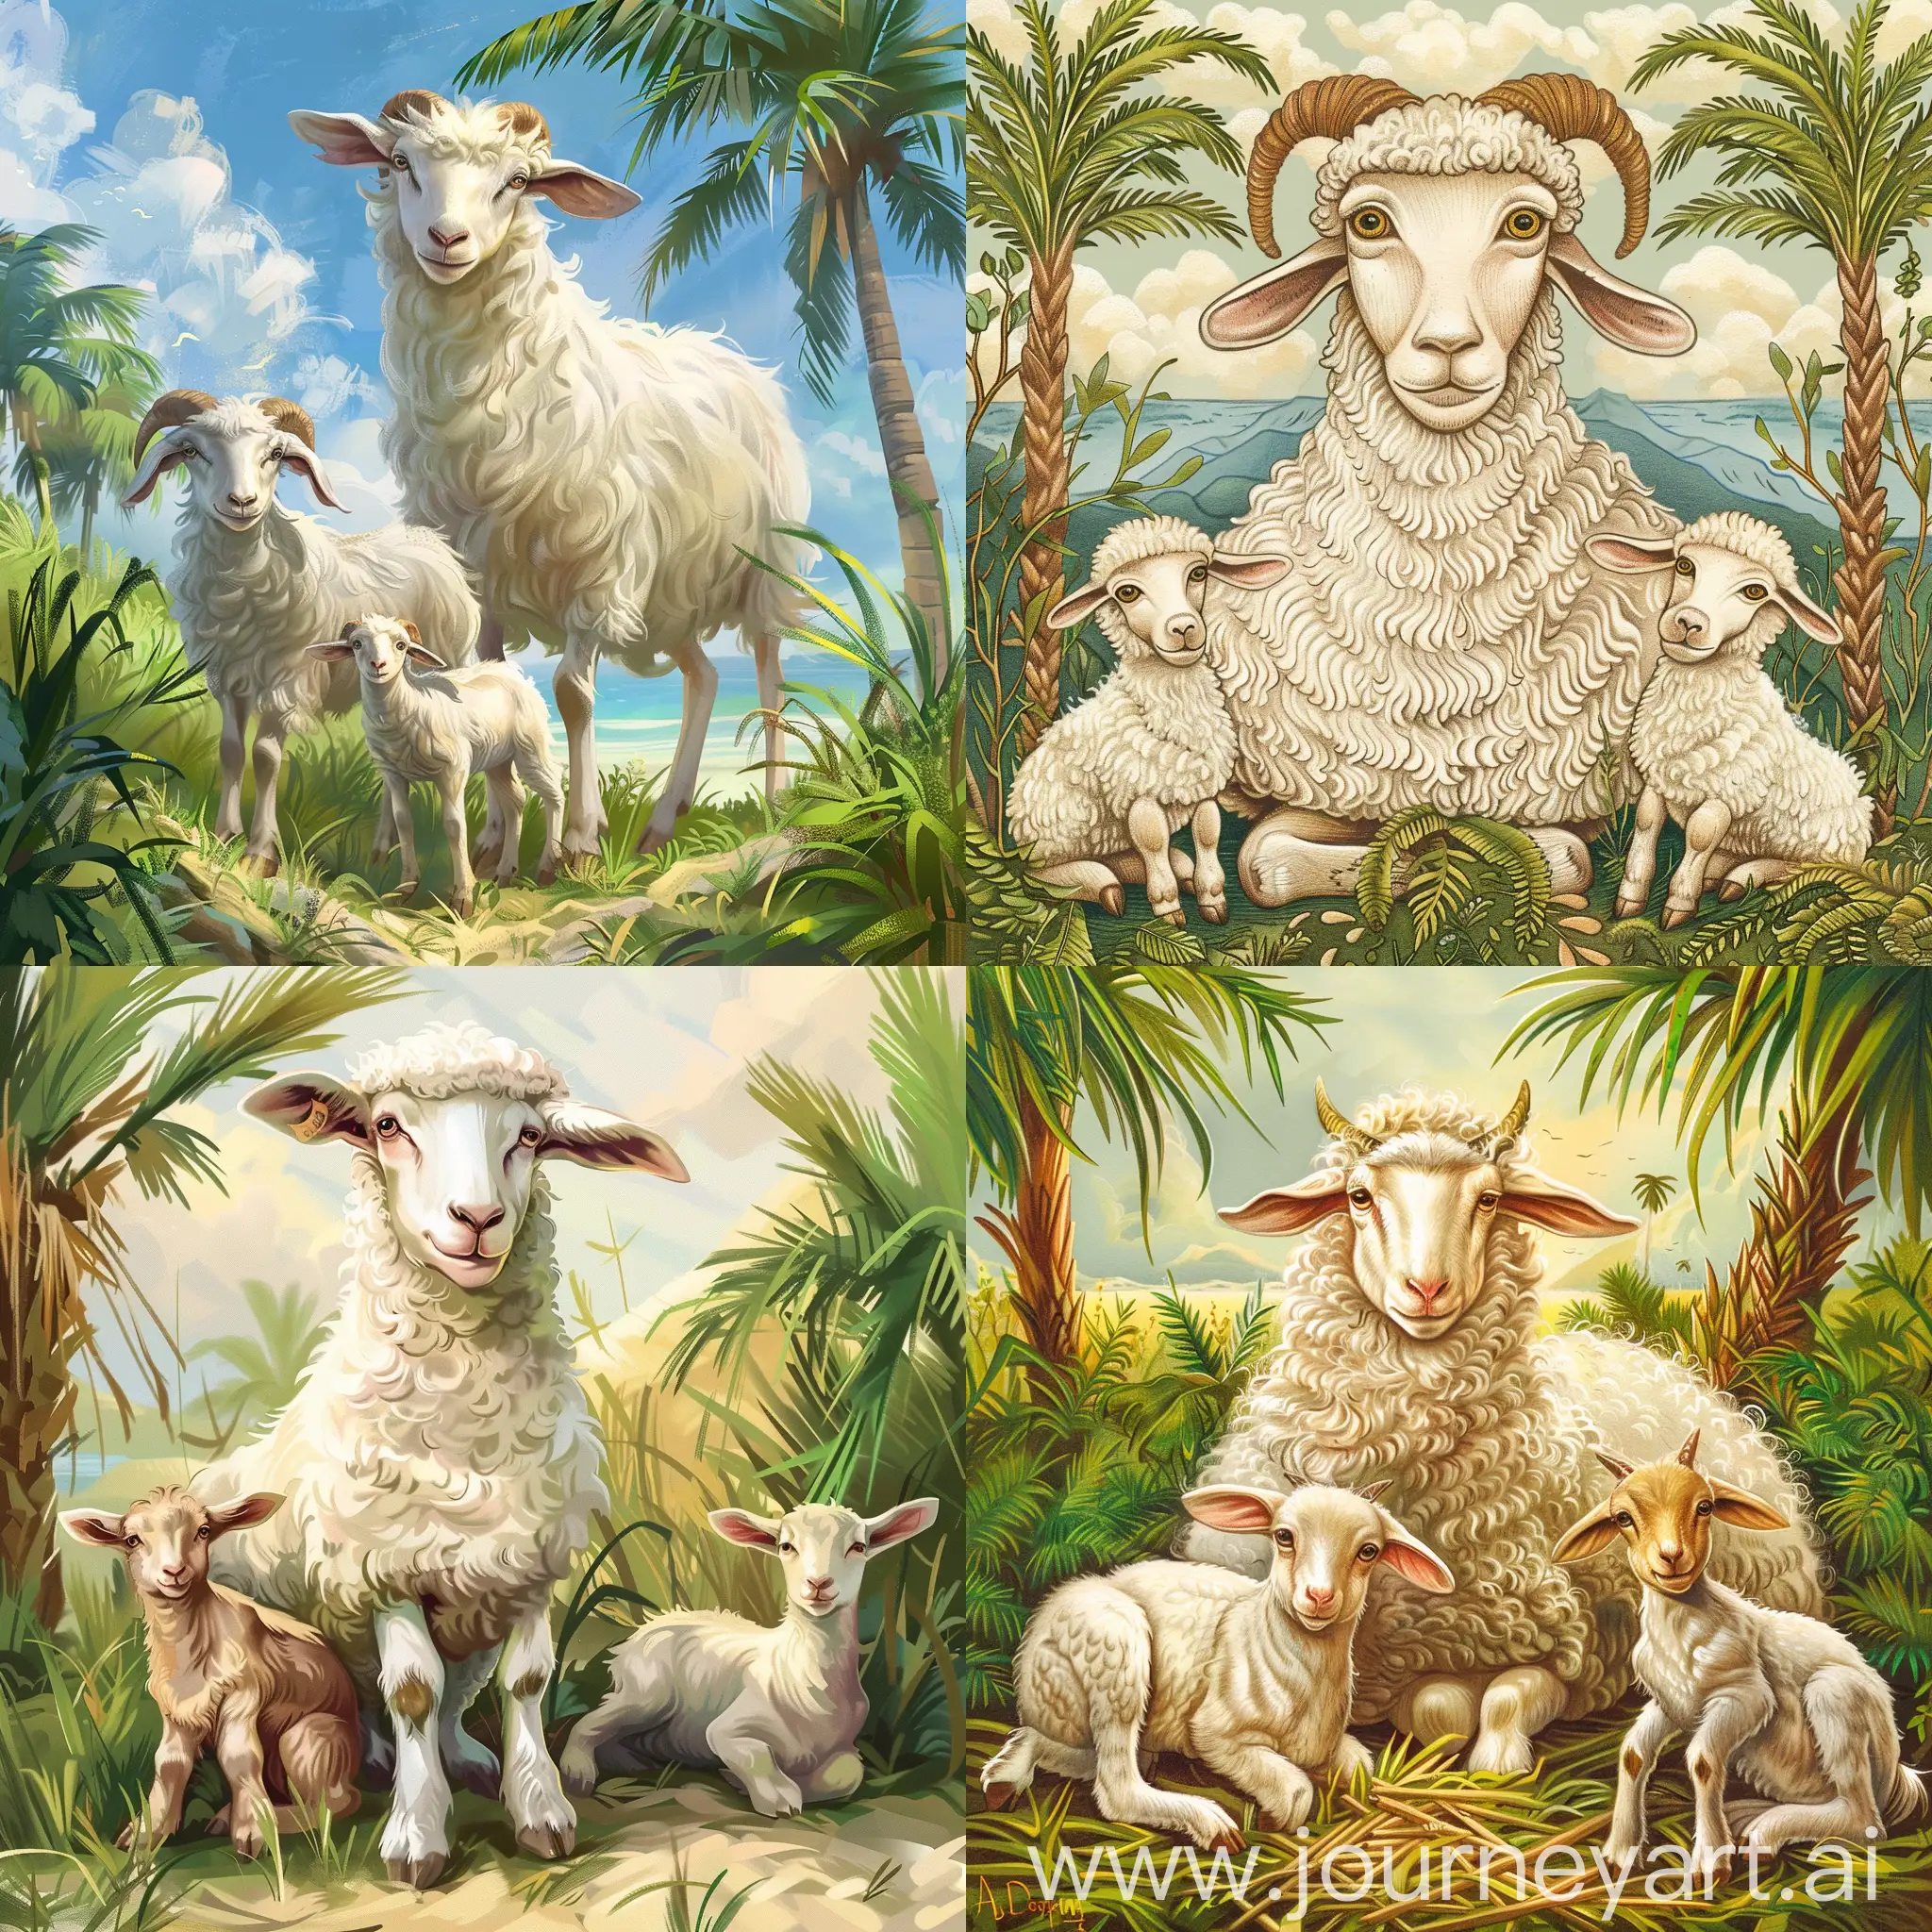 نقاشی فانتزی کودکانه از یک گوسفند ماده سفید چشم درشت به همراه دو  بره در طبیعت با سبزه و چمن و پس زمینه درخت نخل باشد.